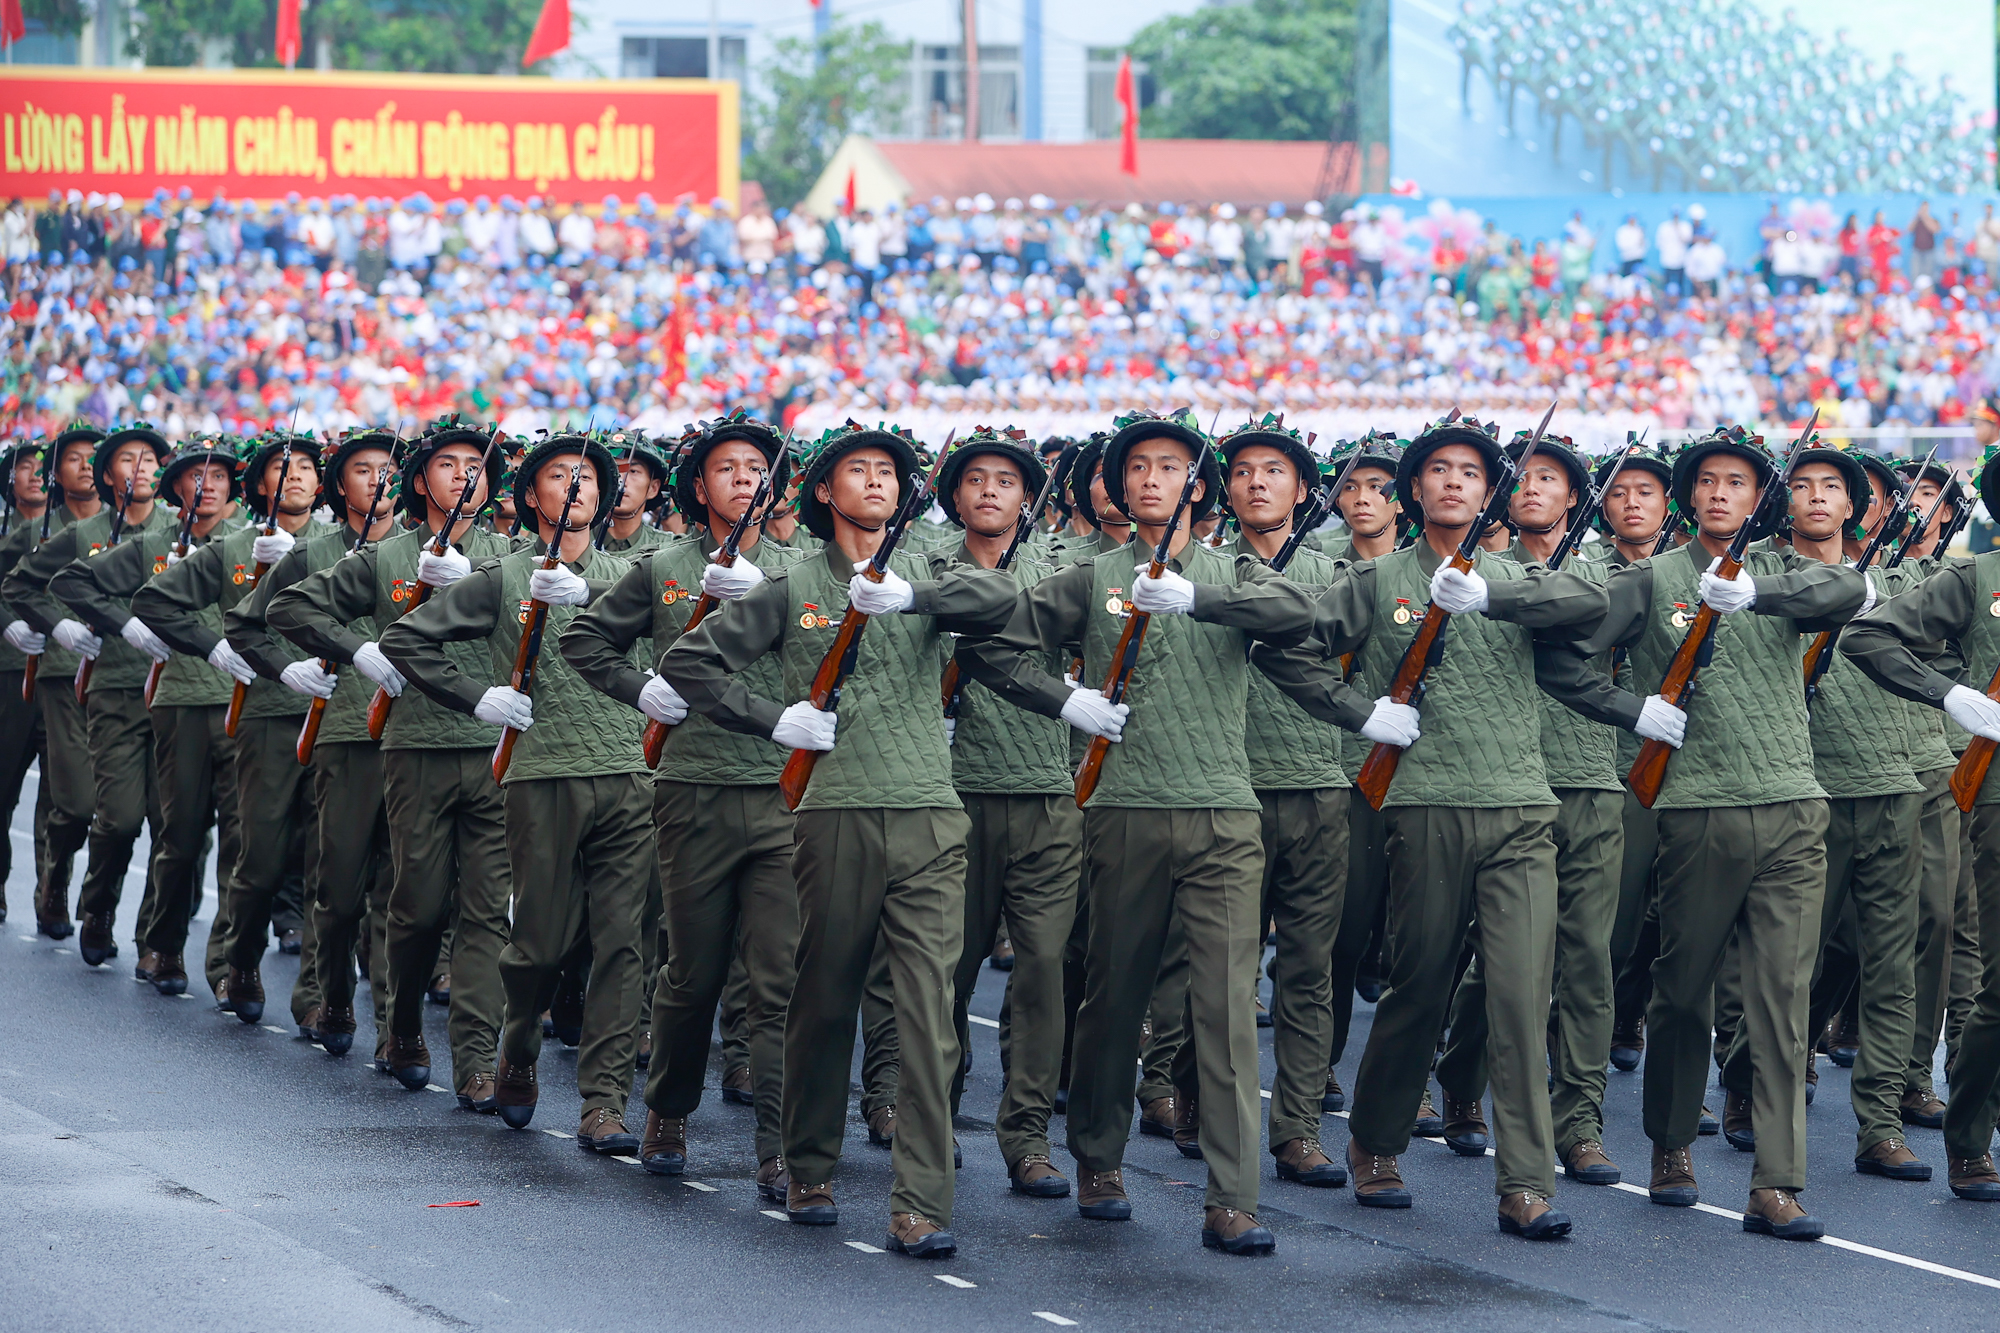 Lễ diễu binh oai hùng và đầy tự hào của 12.000 người - những hình ảnh đi vào lịch sử ở Điện Biên Phủ- Ảnh 19.